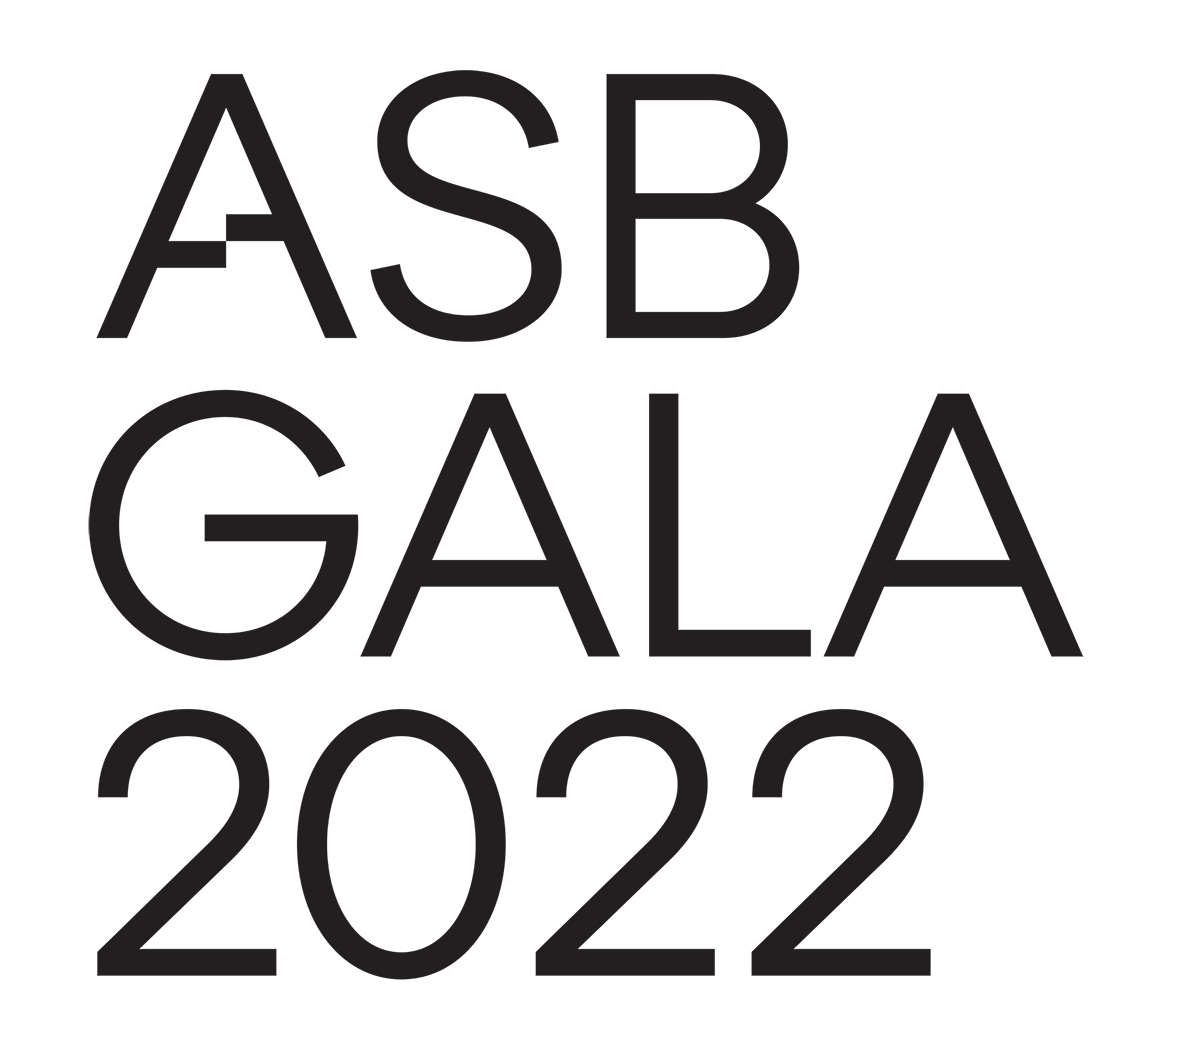 ASBgala_2022